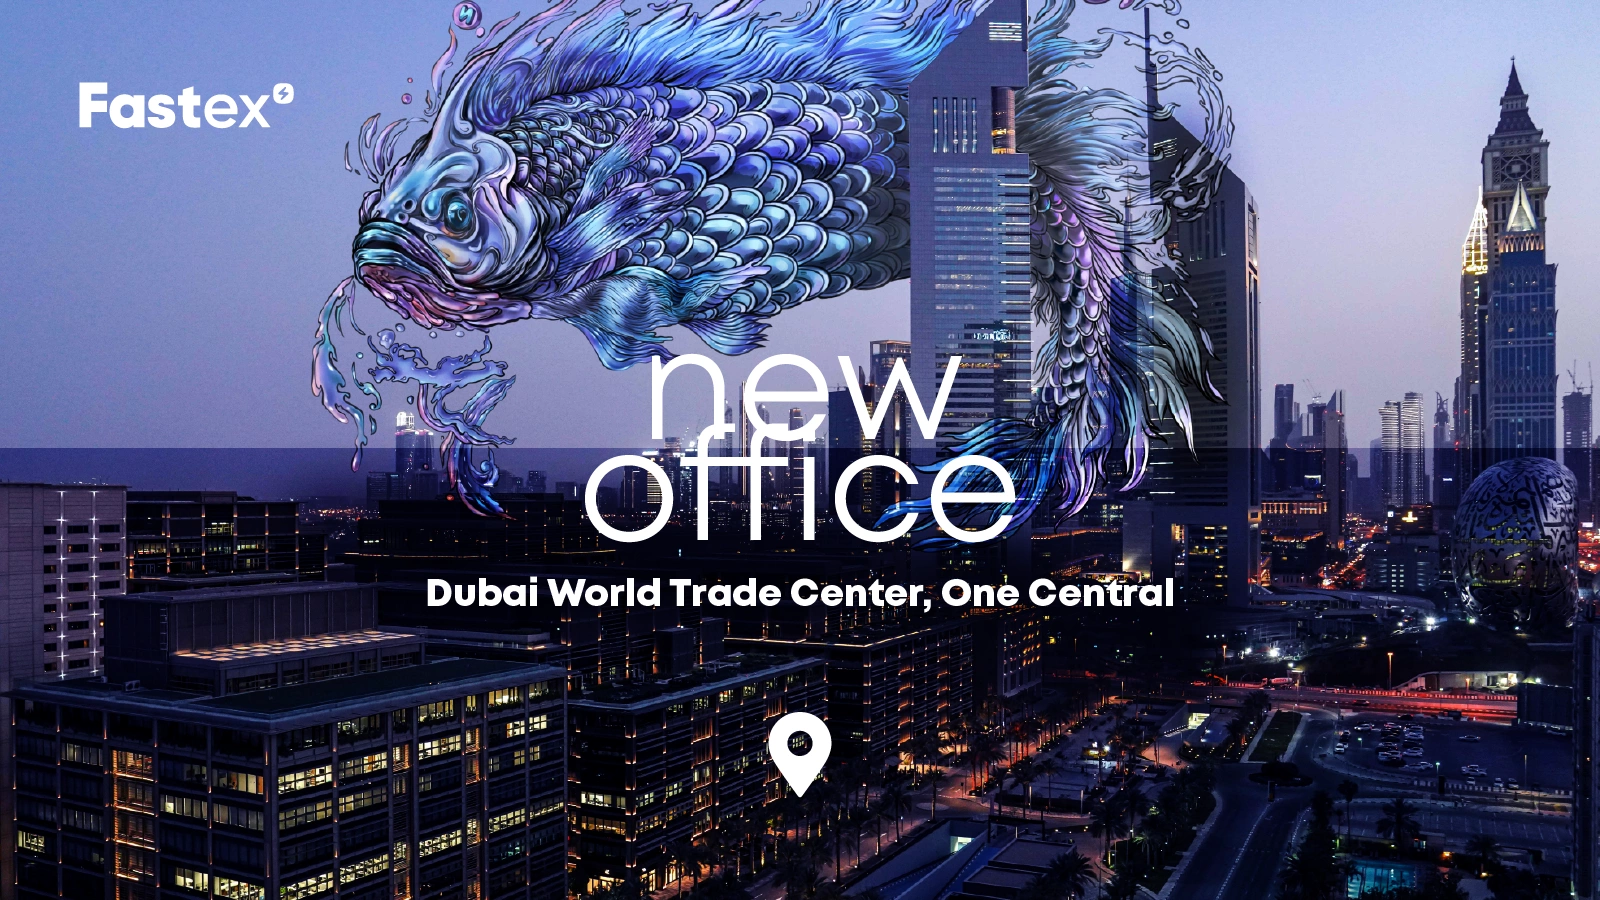 Fastex объявляет об открытии нового офиса в One Central, во Всемирном торговом центре Дубая